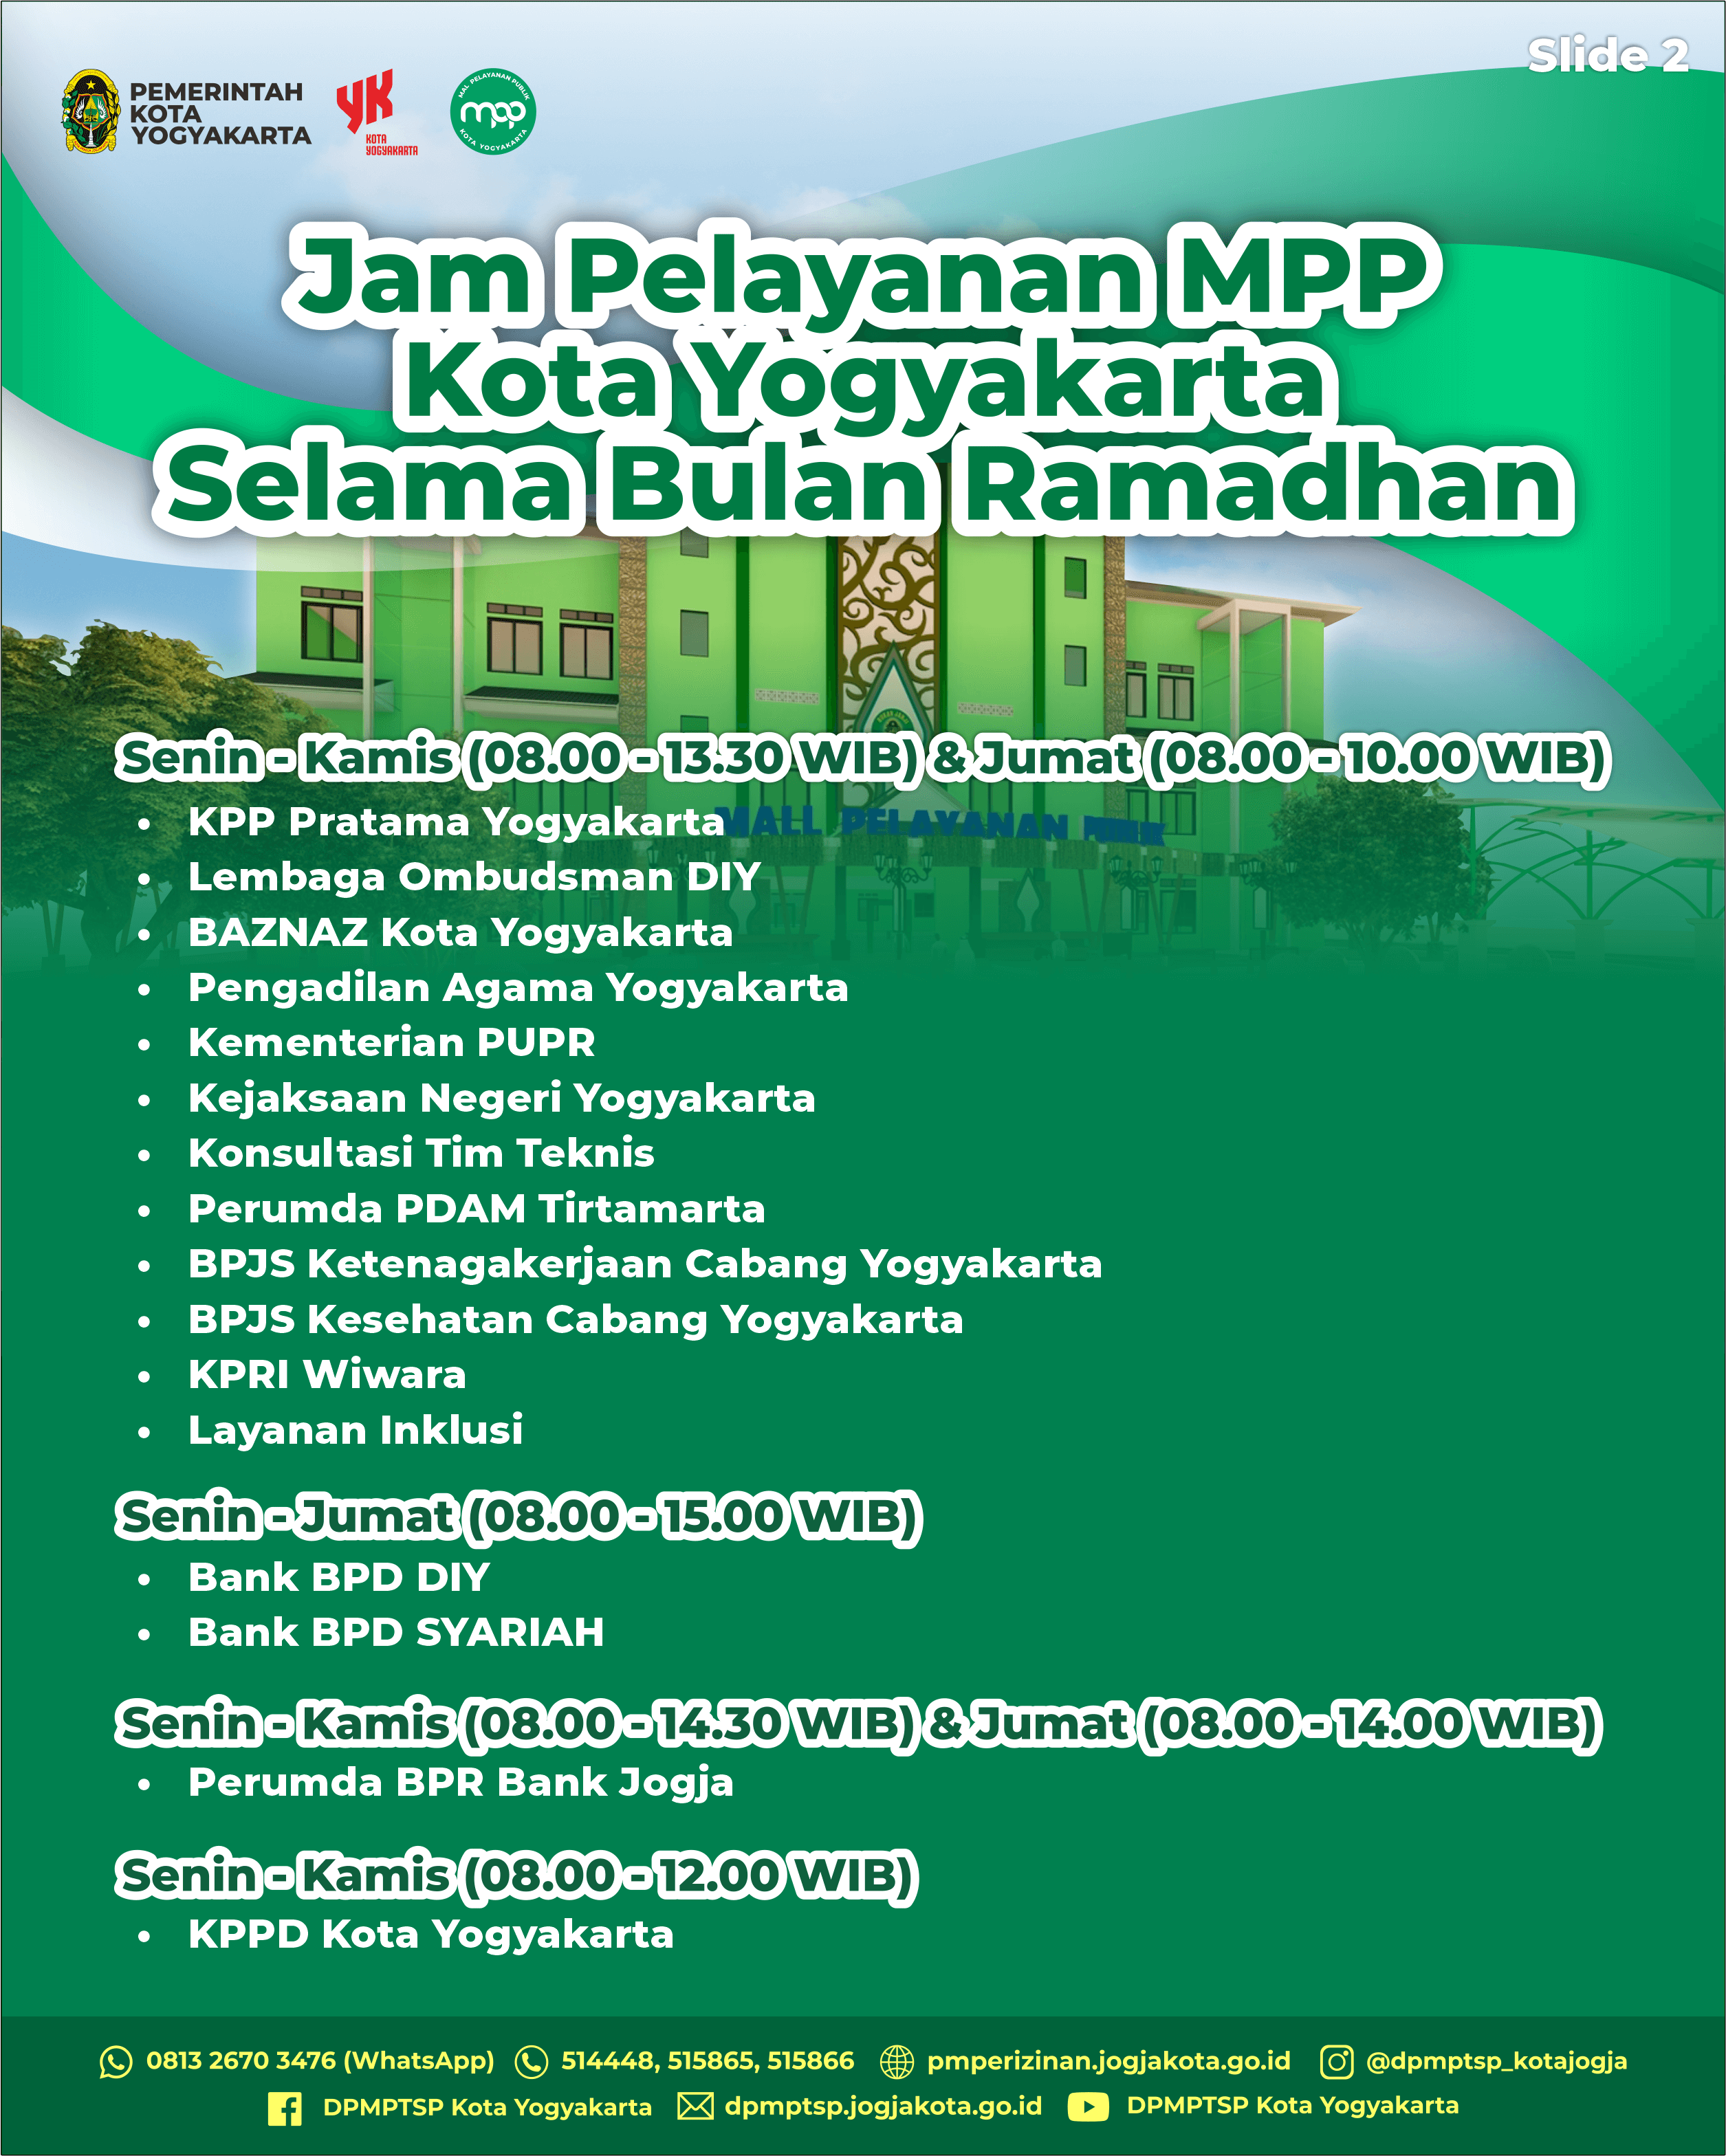 Jam Pelayanan Mall Pelayanan Publik Kota Yogyakarta Selama Bulan Ramadhan